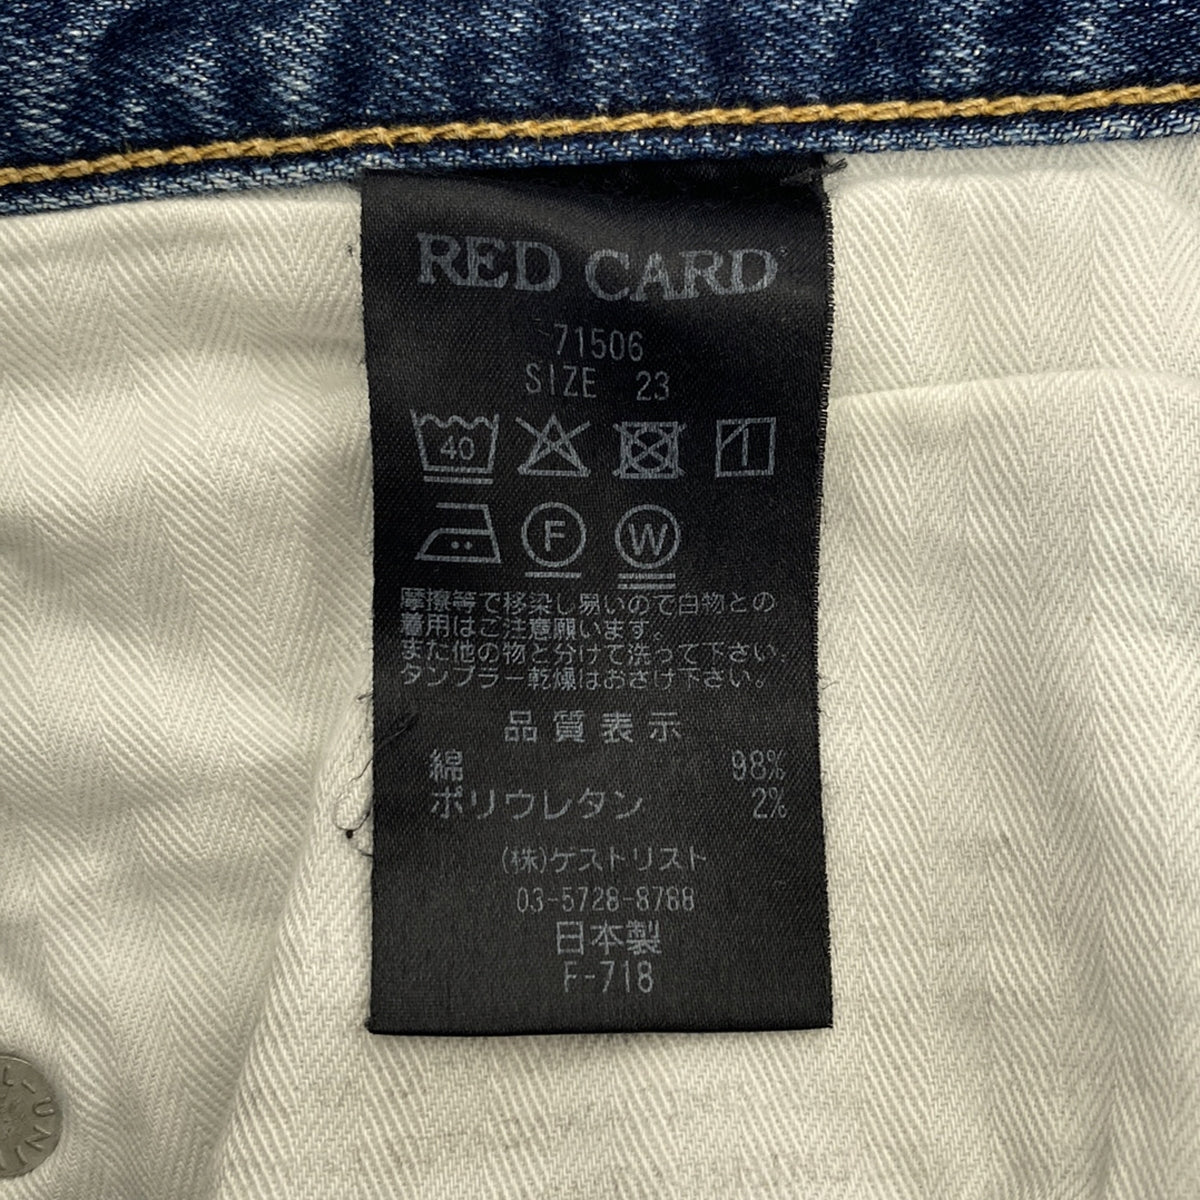 RED CARD / レッドカード | Anniversary 25th 71506 / ダメージ加工 カットオフ デニムパンツ | 23 |  レディース